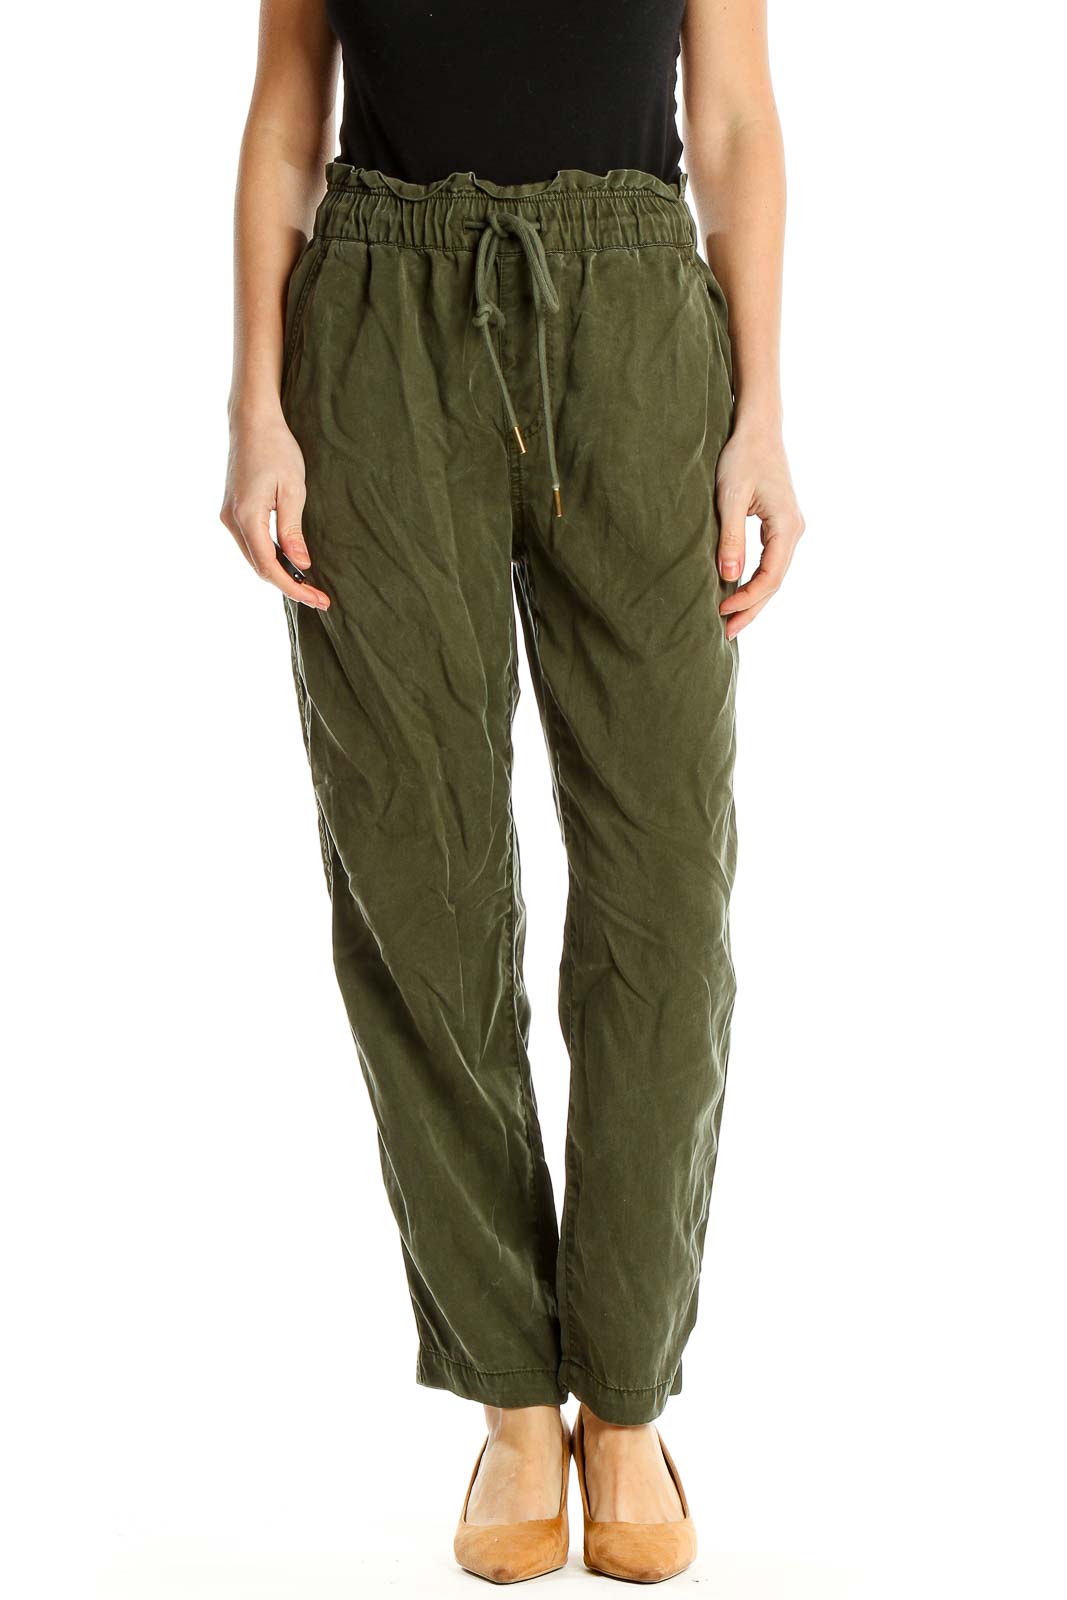 Green Casual Lyocell Drawstring Pants Front